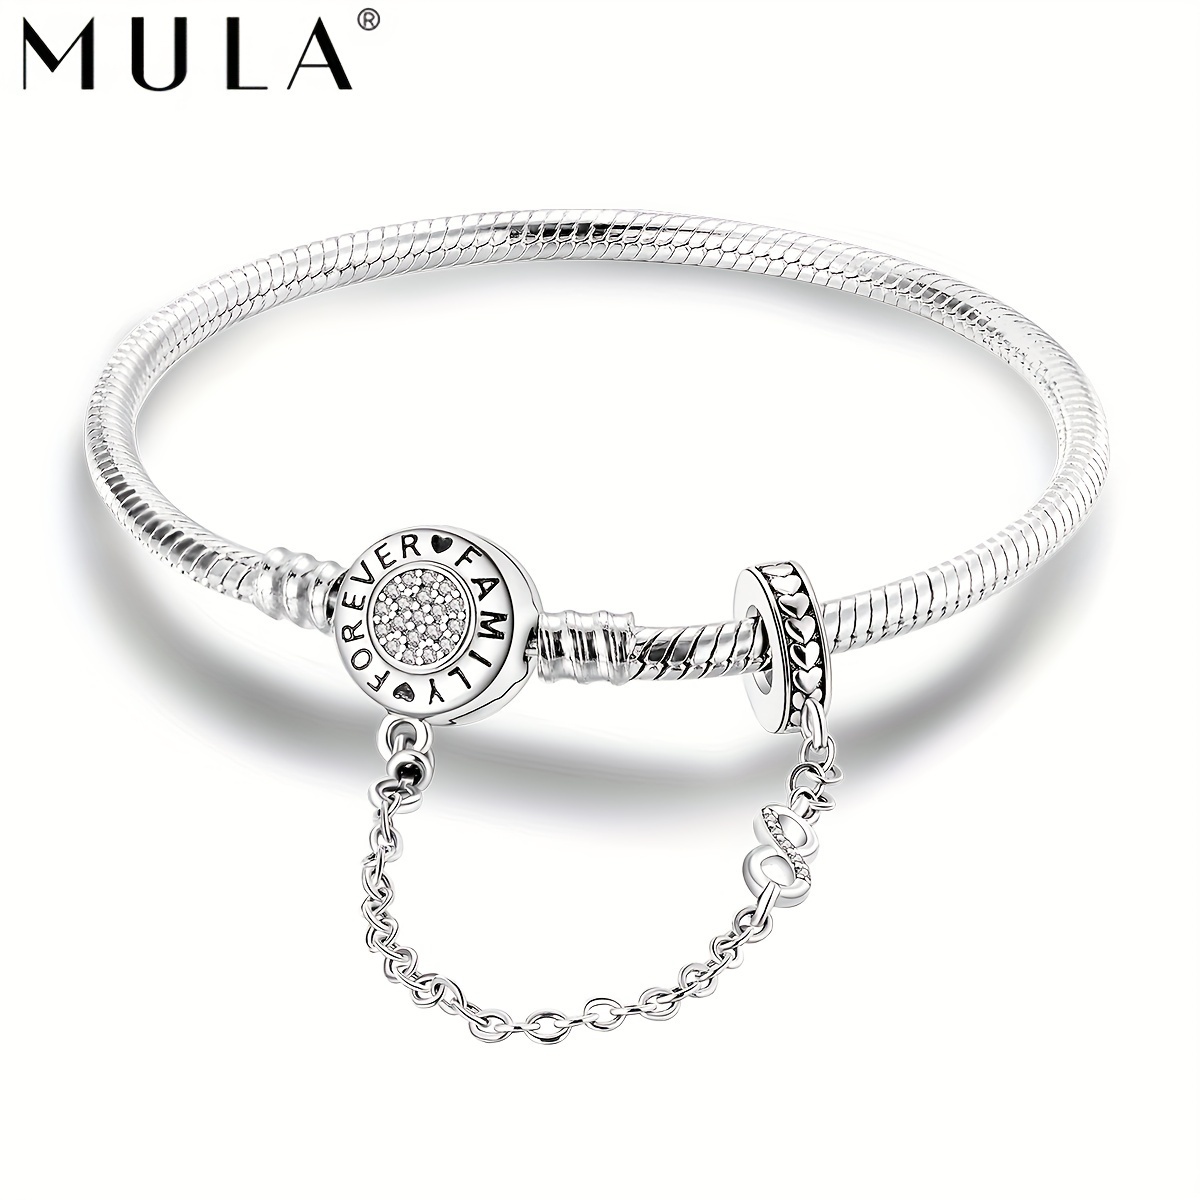 

Mula 925 Silver Plated Simple Family Forever Love Snake Bracelet Fit Original Bangle Bracelets Women Jewelry Soft Bracelet Christmas Gift For Mom Women